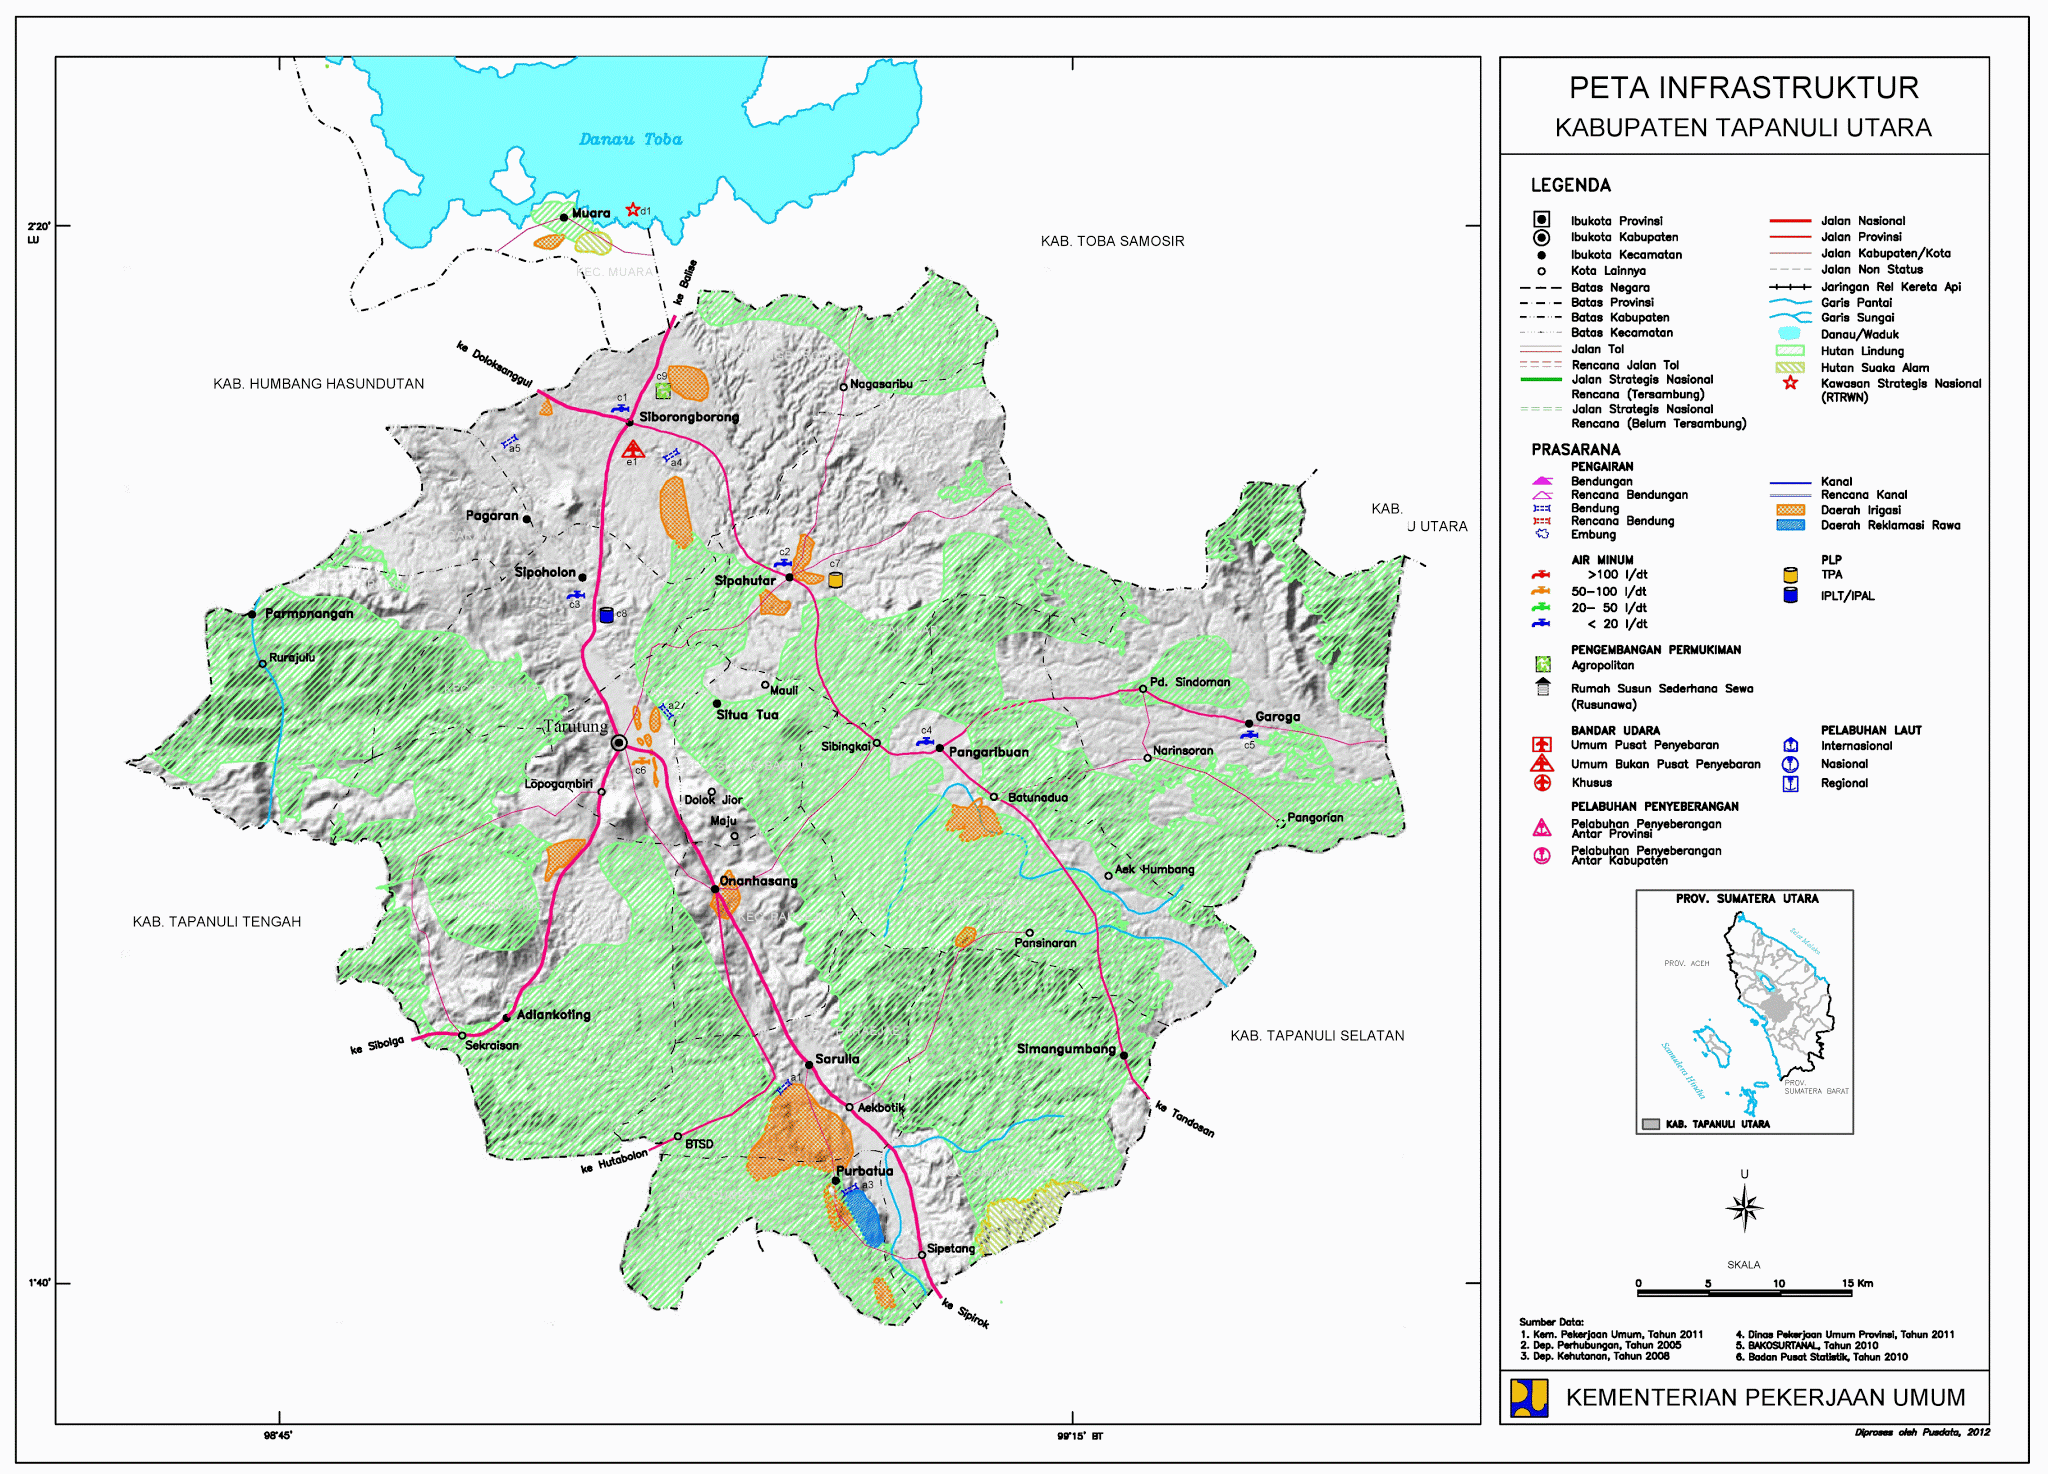  Peta  Kota Peta  Kabupaten  Tapanuli Utara